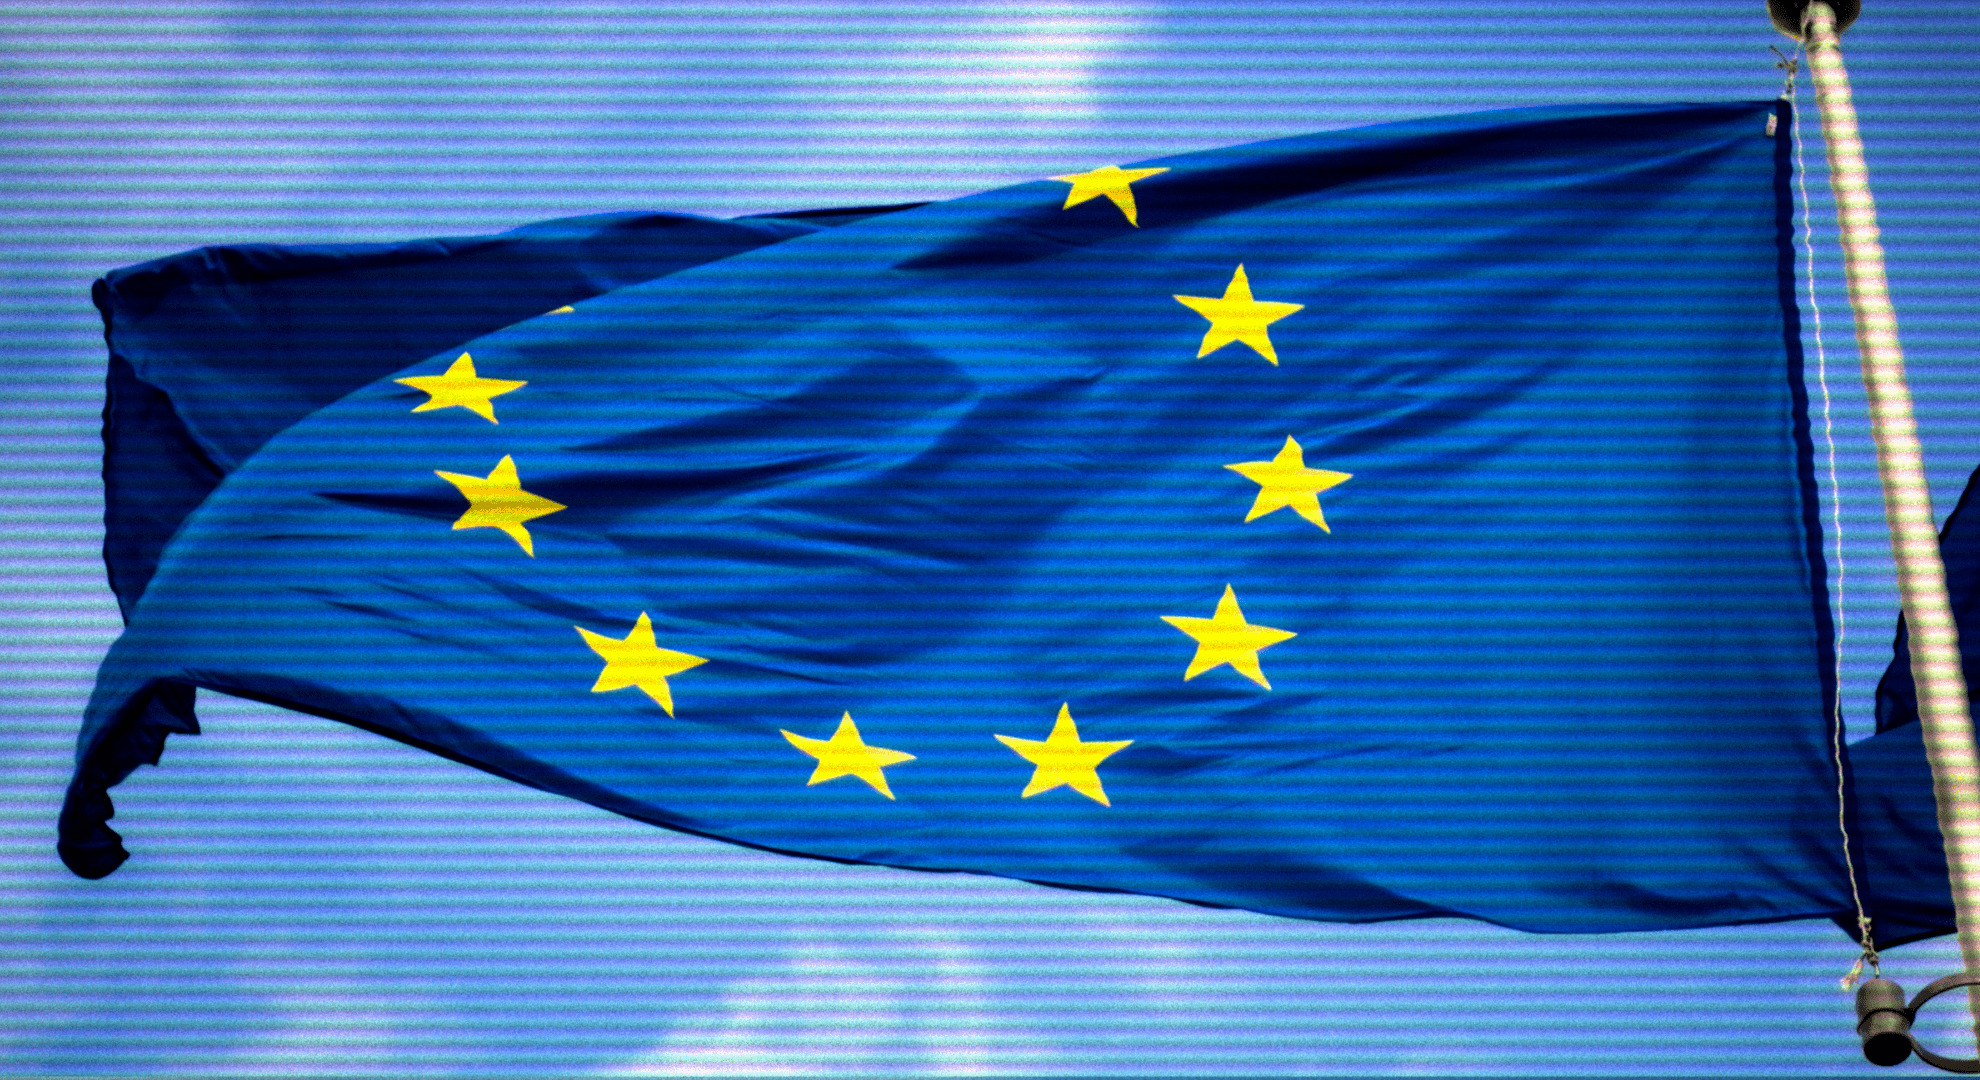 La majorité des pays de l'UE sont favorables au scan des messages privés, même chiffrés